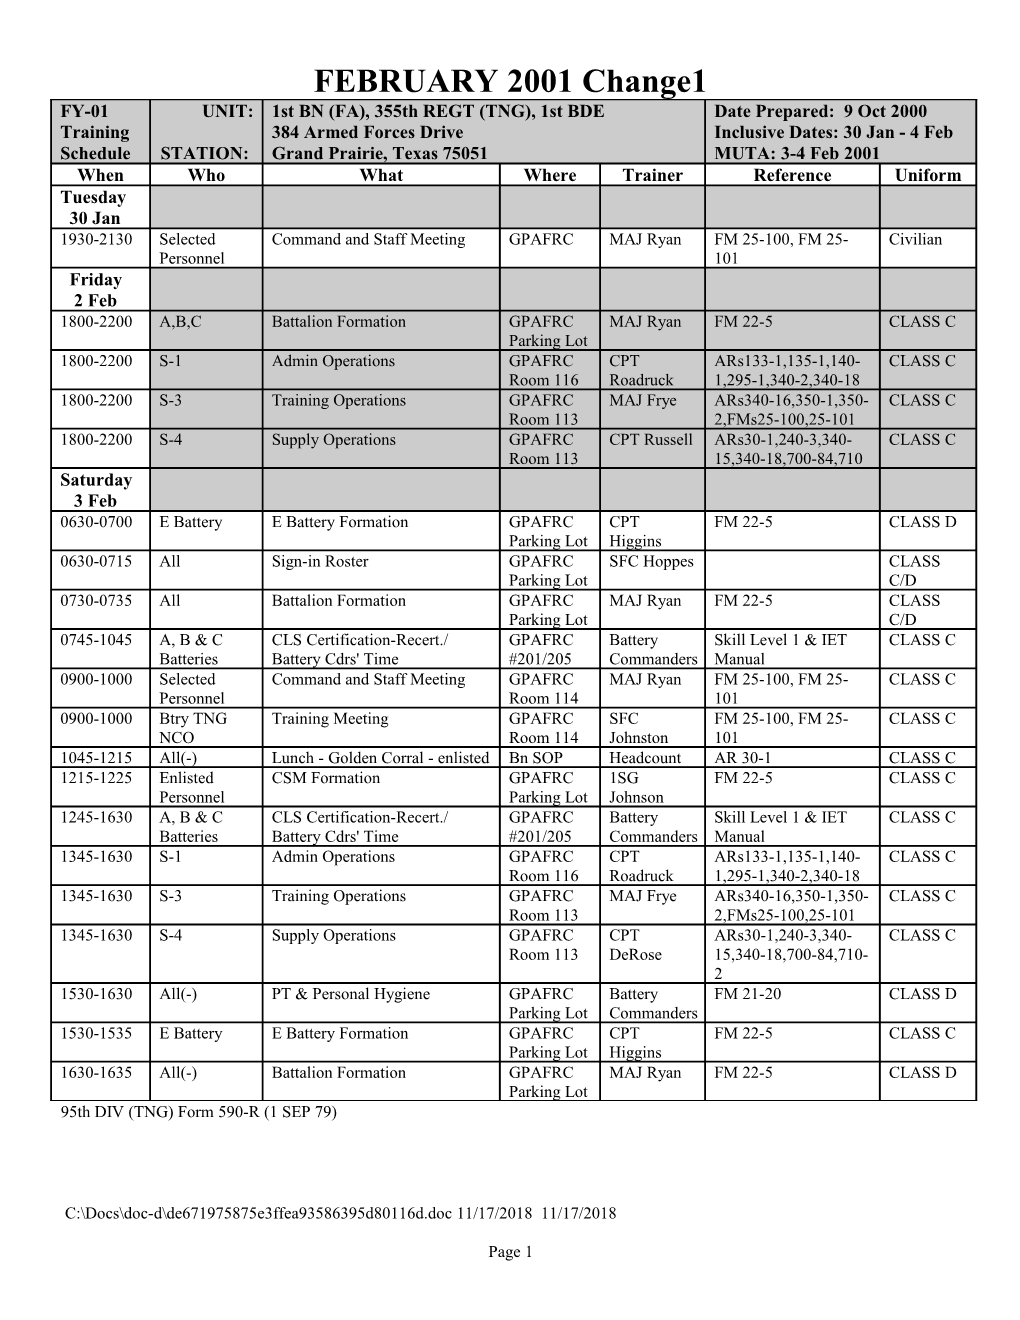 AUG 94 BN Training Schedule